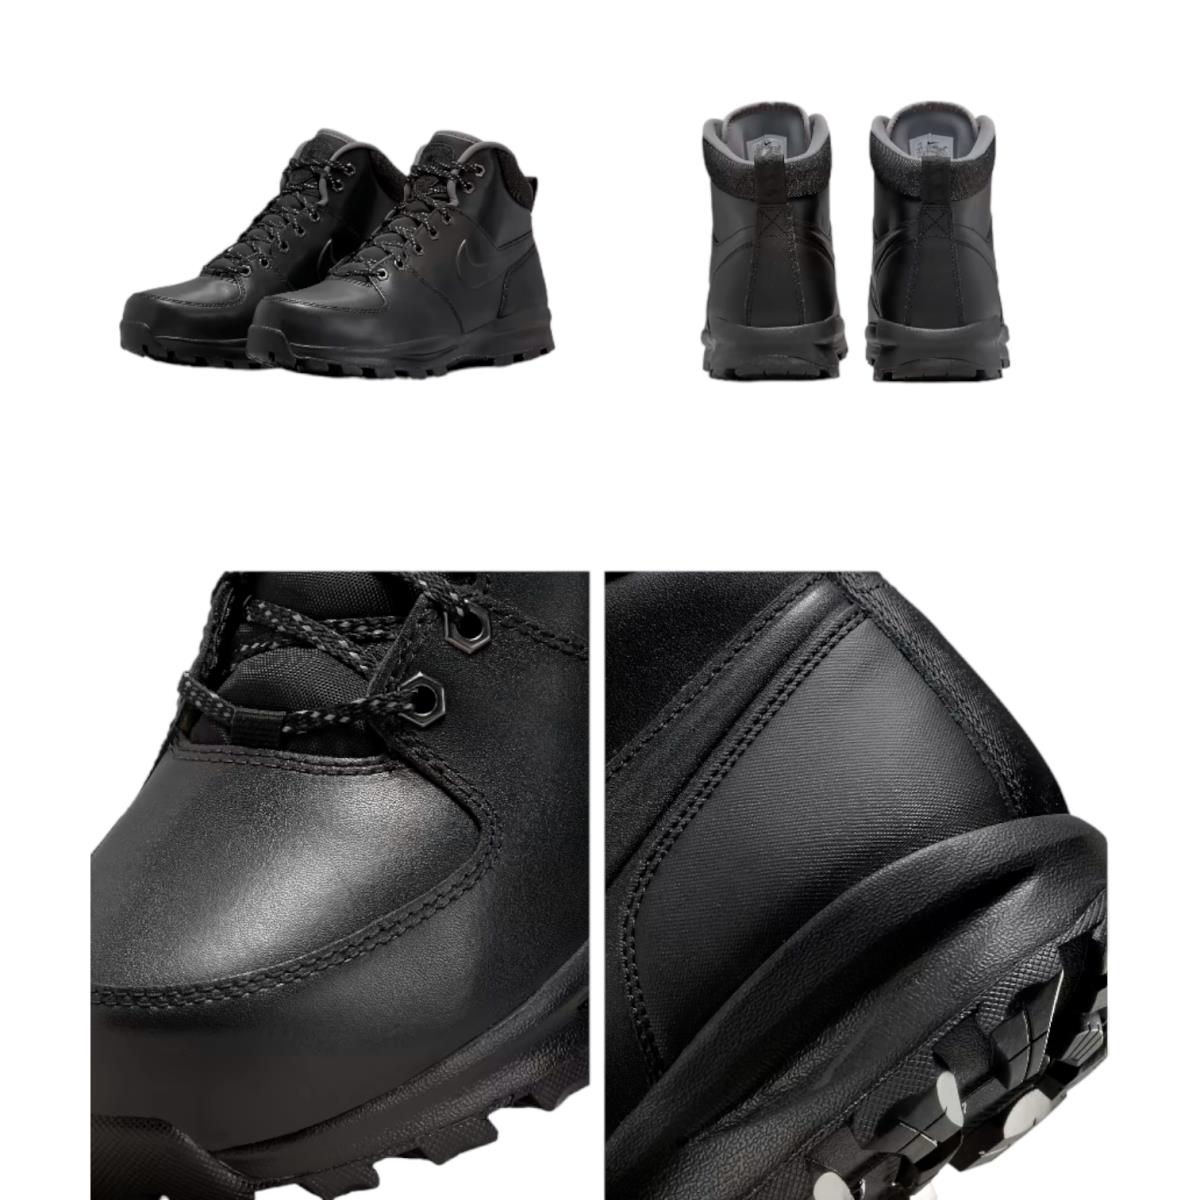 Nike shoes Manoa - Black 2